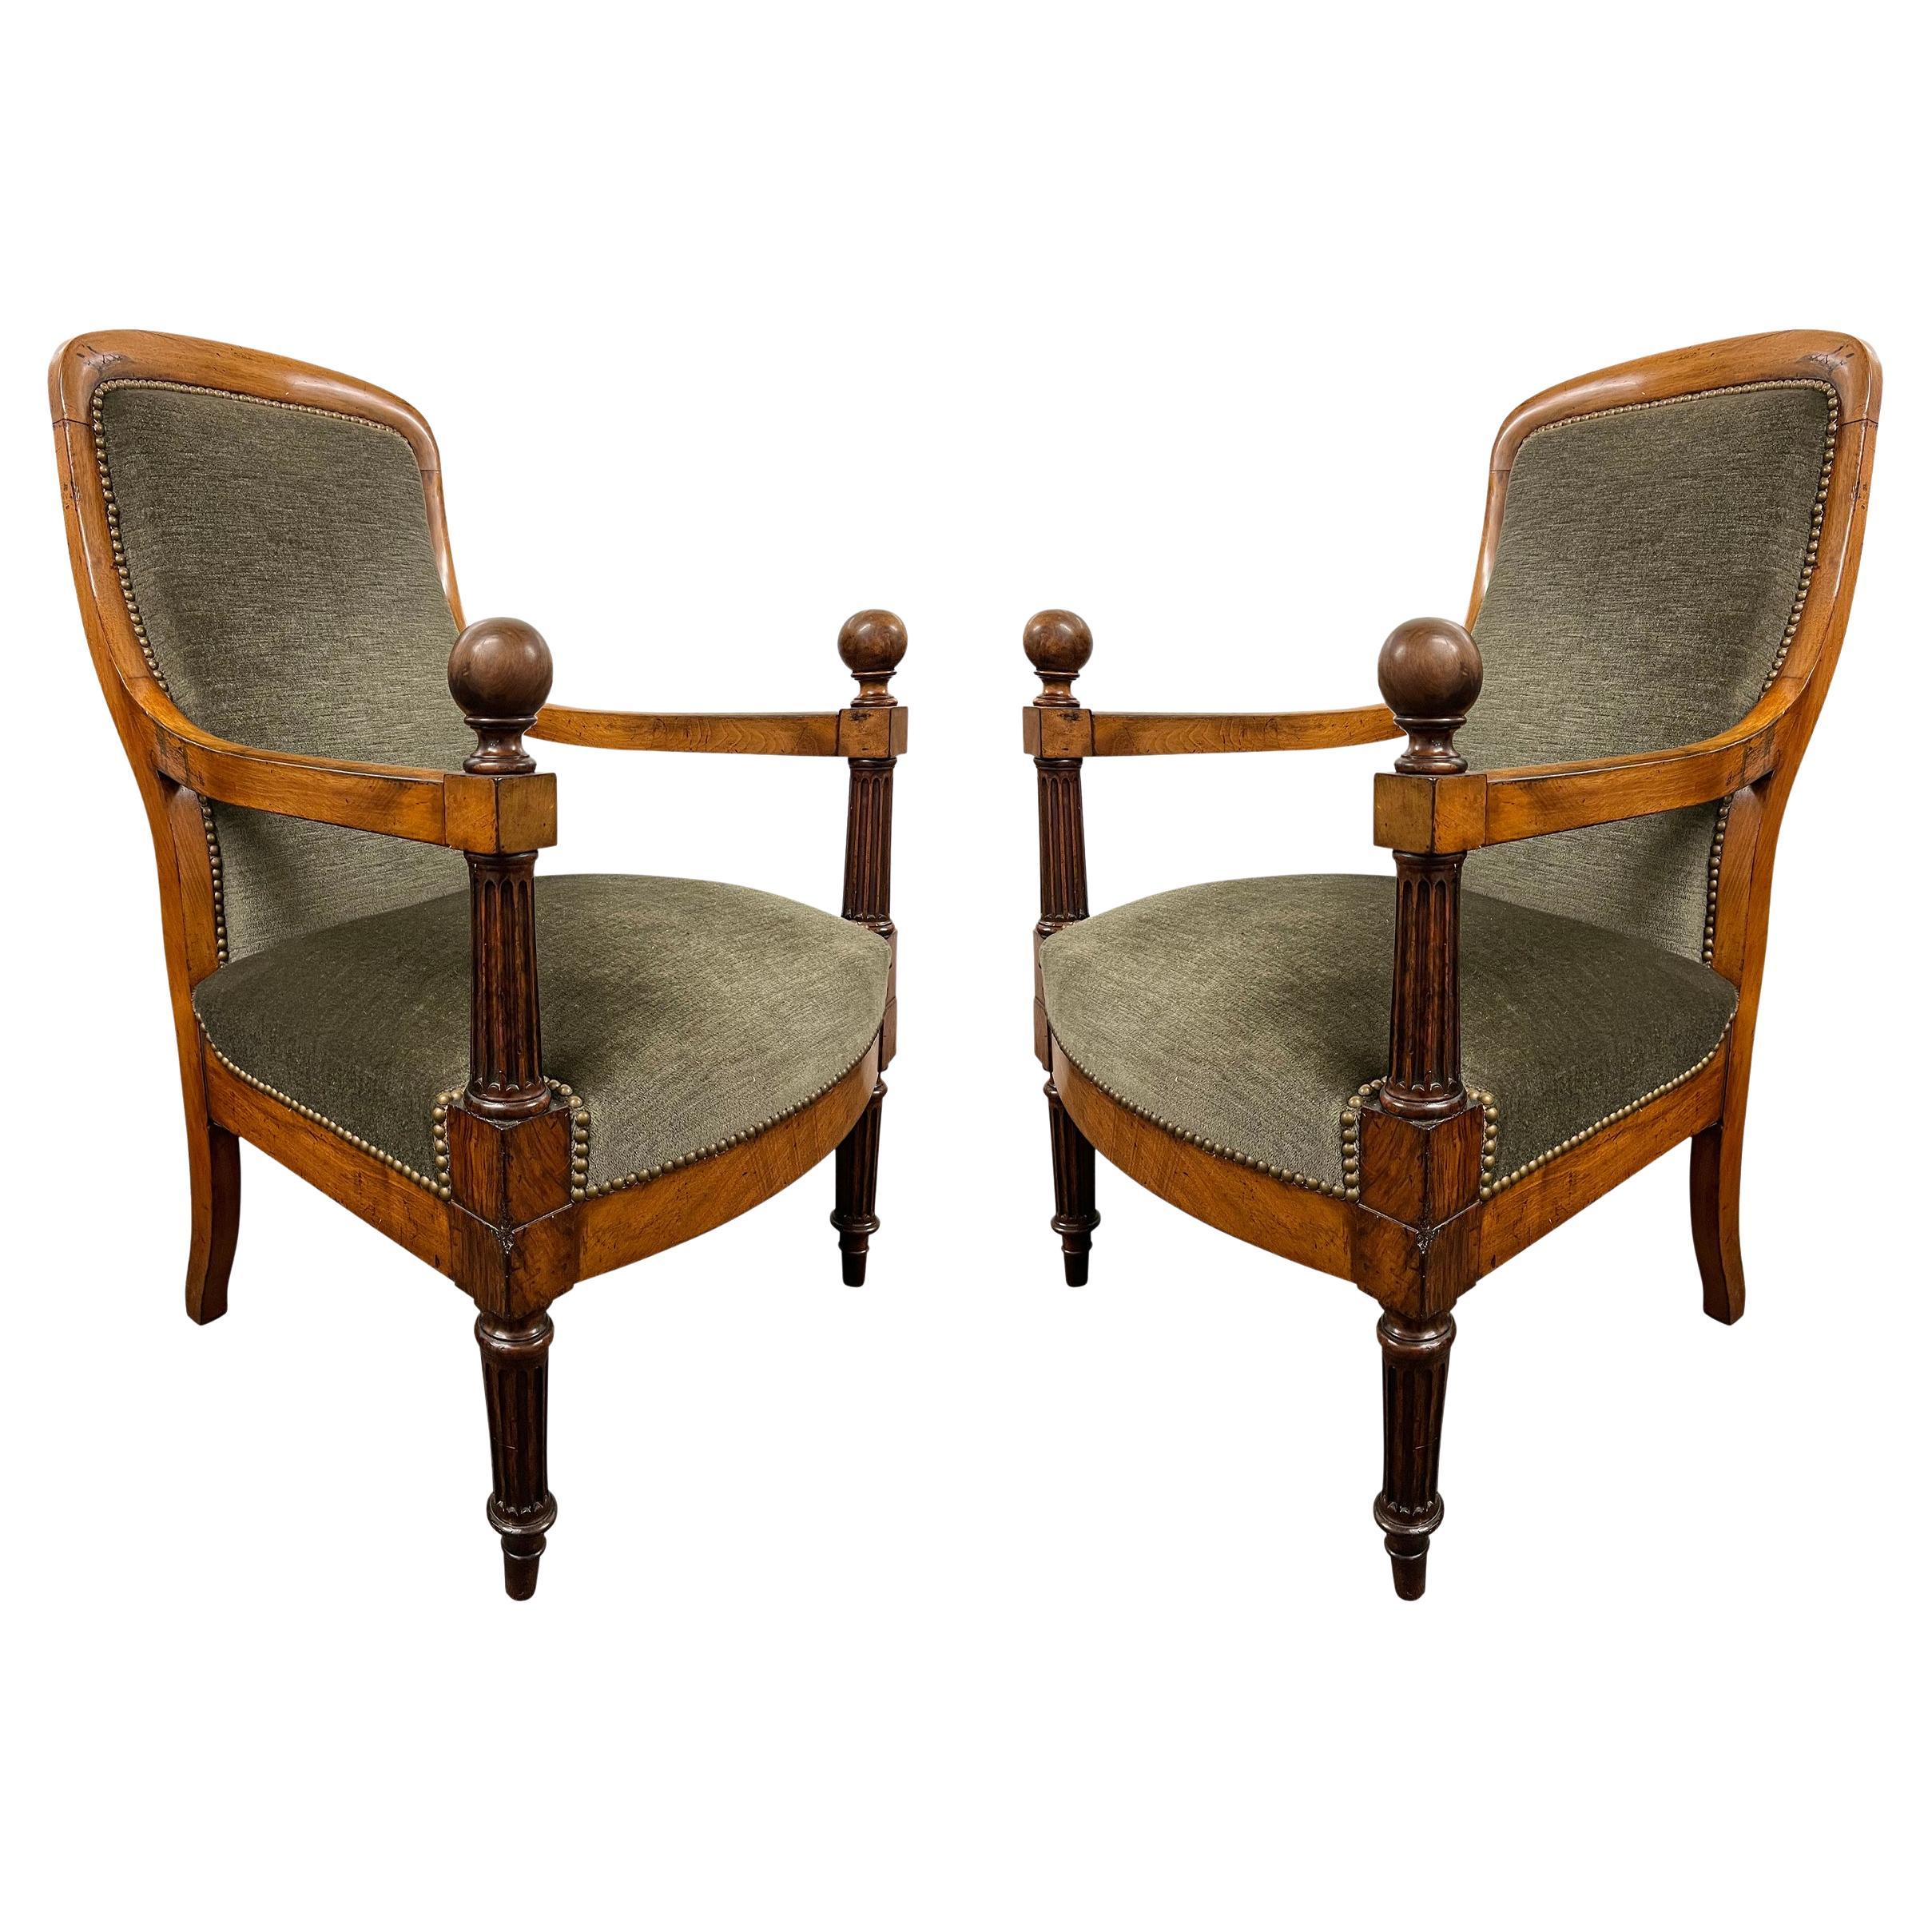 Paire de fauteuils Regency anglais du début du 19e siècle